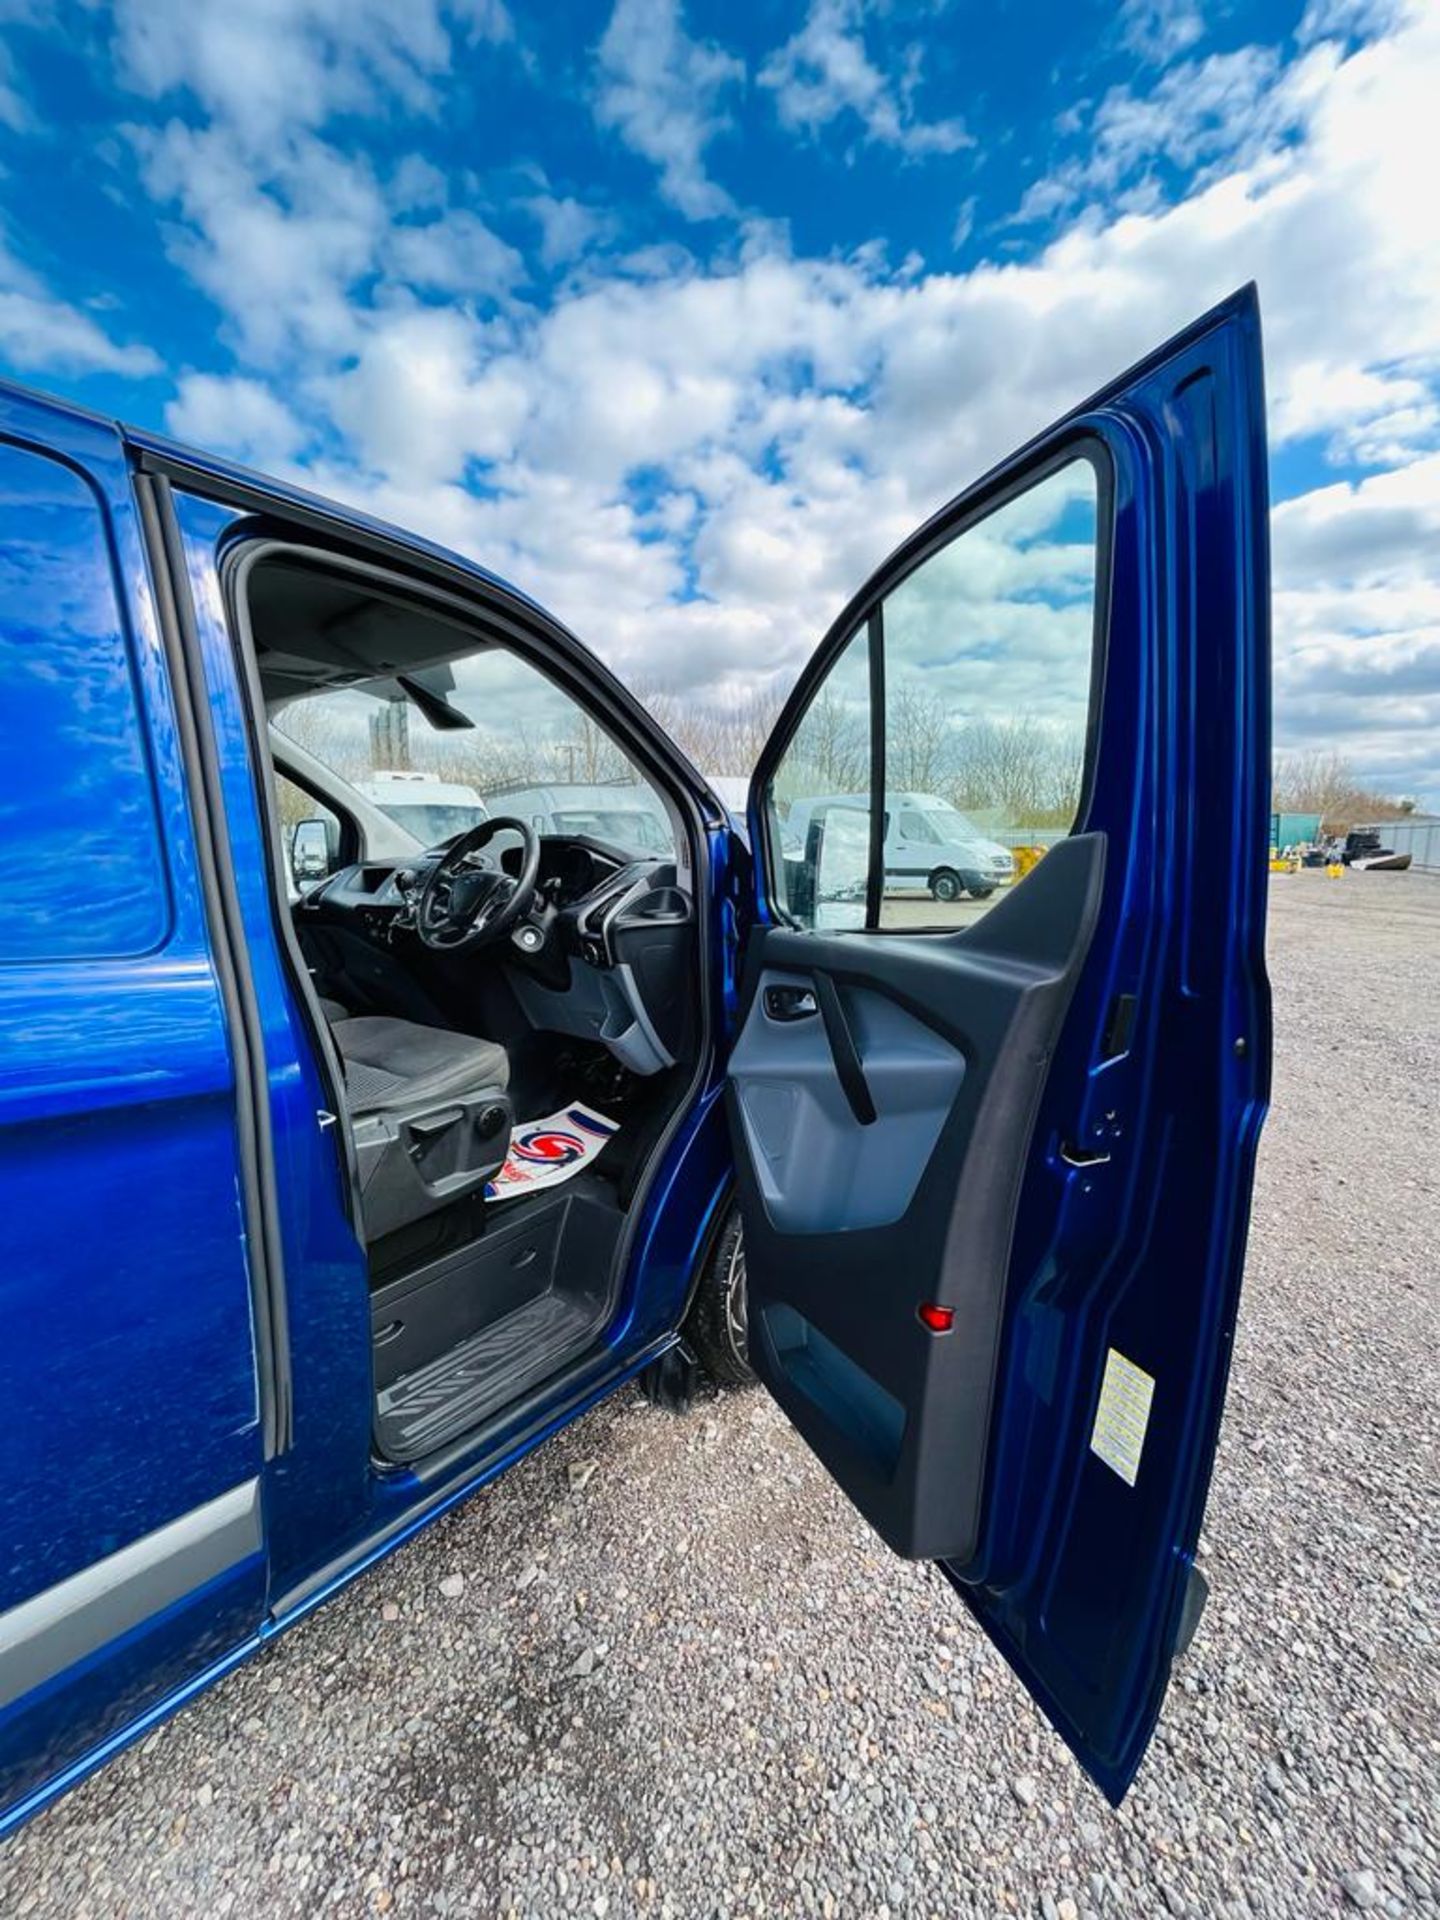 ** ON SALE ** Ford Transit TDCI 125 Trend L1 H1 2016 '16 Reg' Panel Van - No Vat - Image 13 of 25